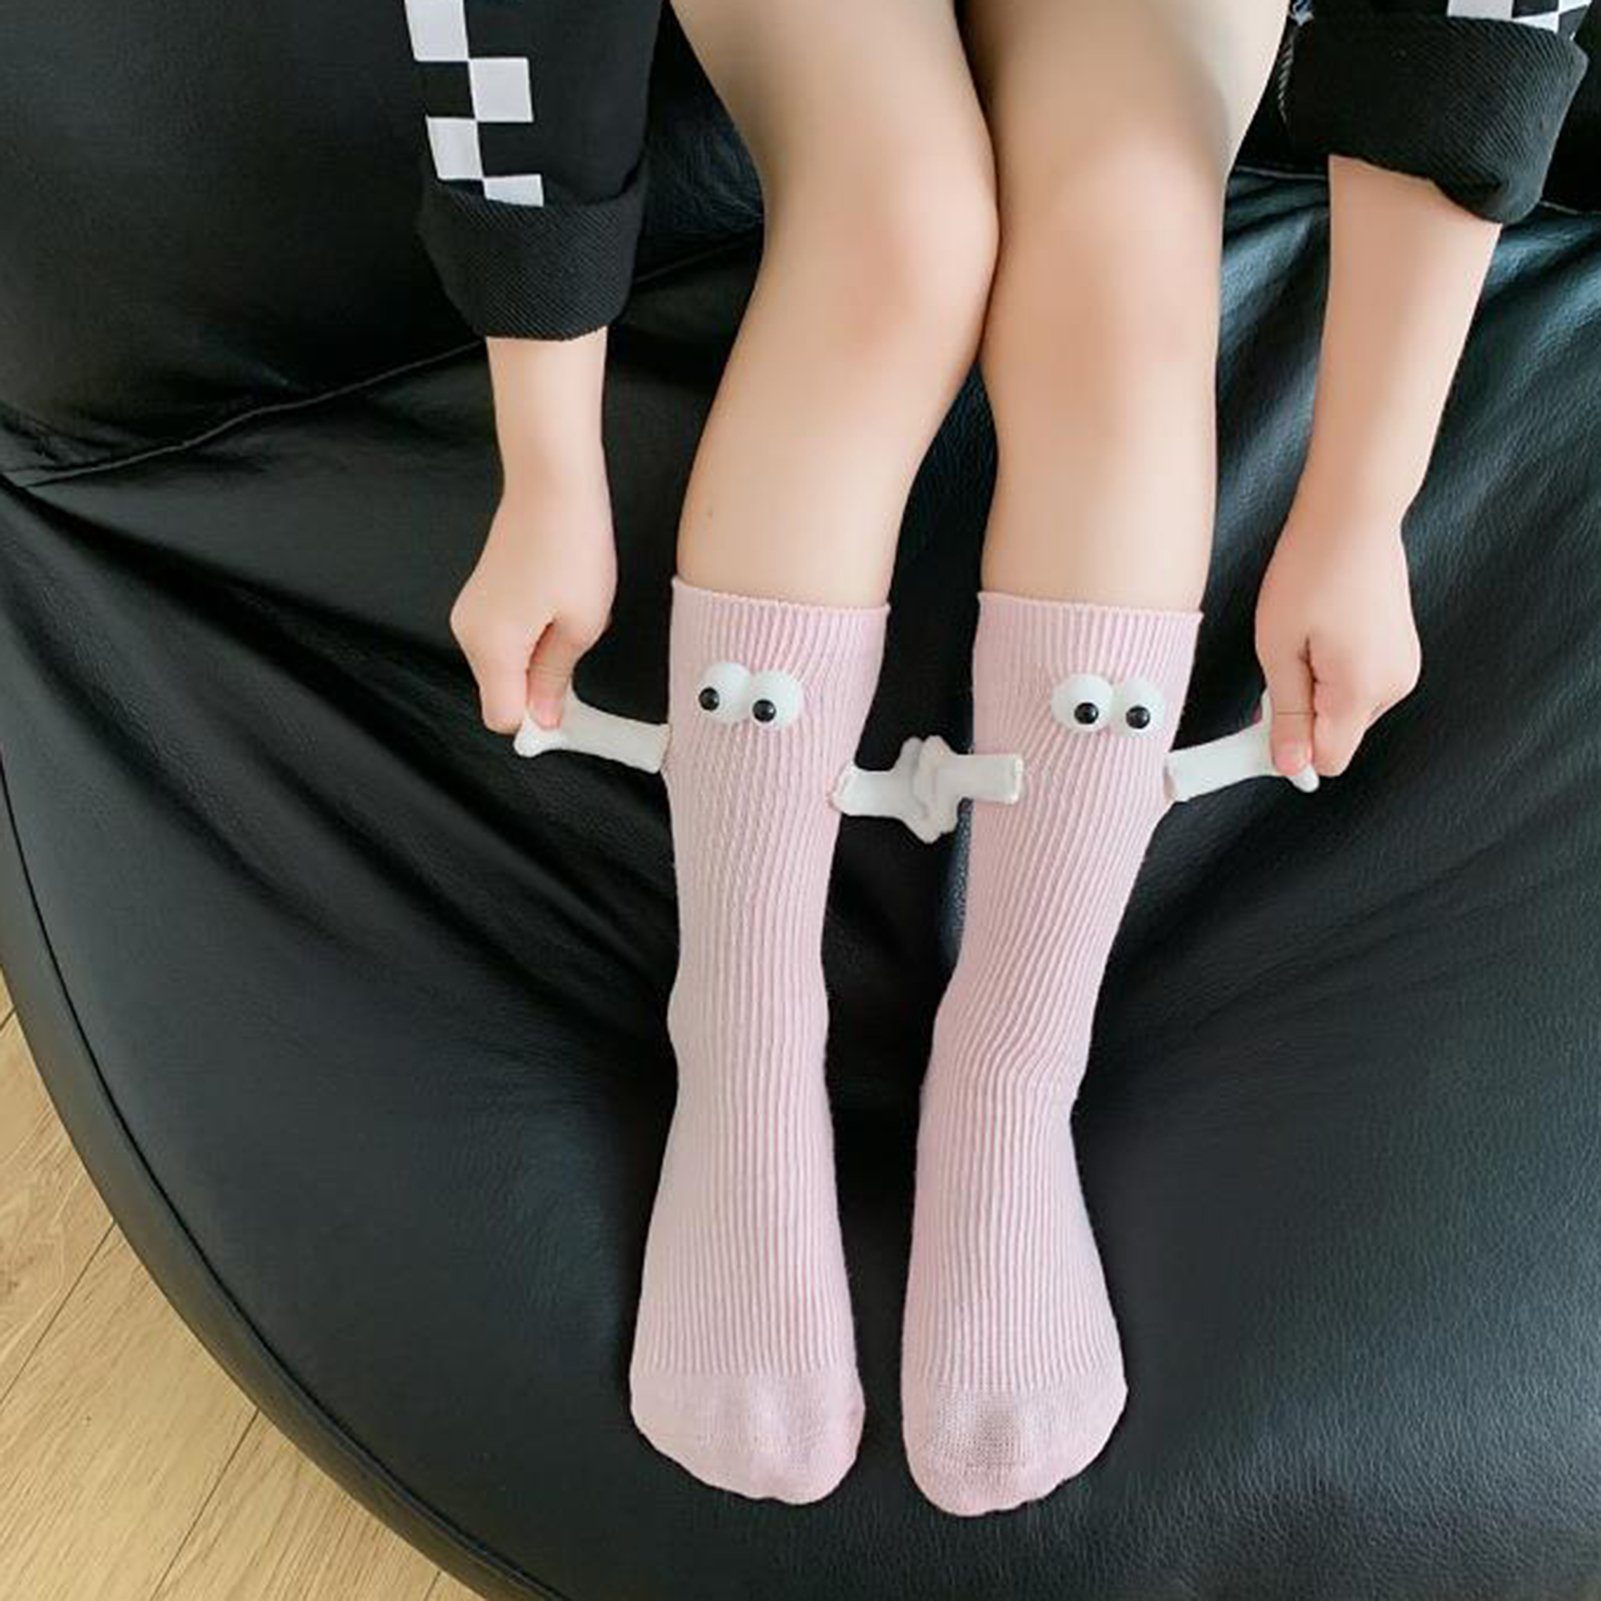 Rutaqian Feinsocken 2 Paar Socken Mit Magneten, Socken Die Händchen Halten (Magnetische Saug-3D-Puppenaugen-Socke für Unisex, Lustige Paar-Händchenhalten-Socken, und Trend-Persönlichkeit) Rosa